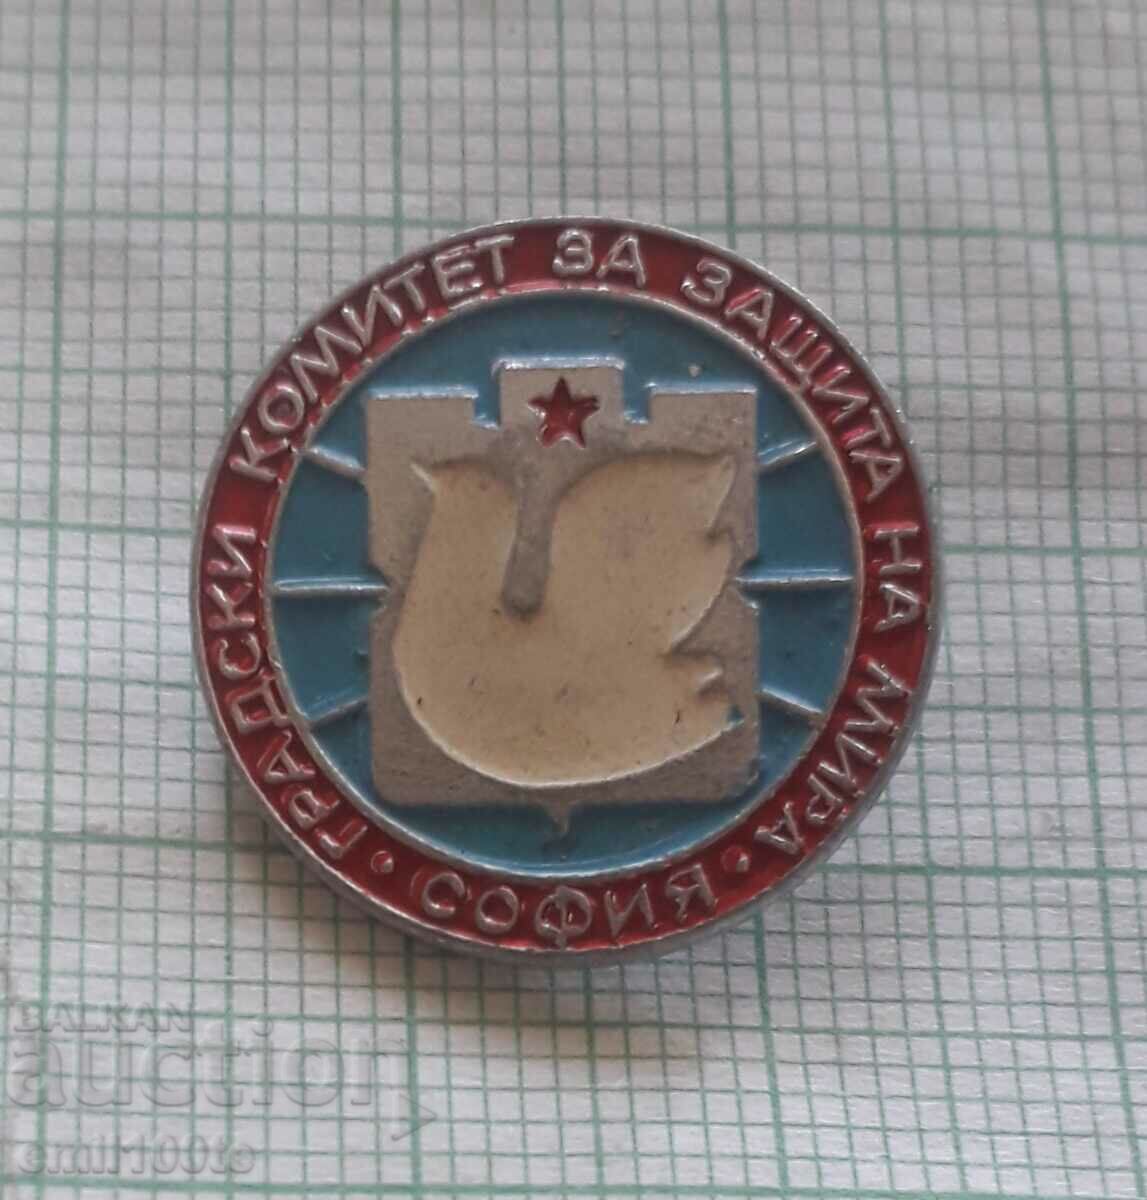 Σήμα - Επιτροπή της πόλης της Σόφιας για την Προστασία της Ειρήνης